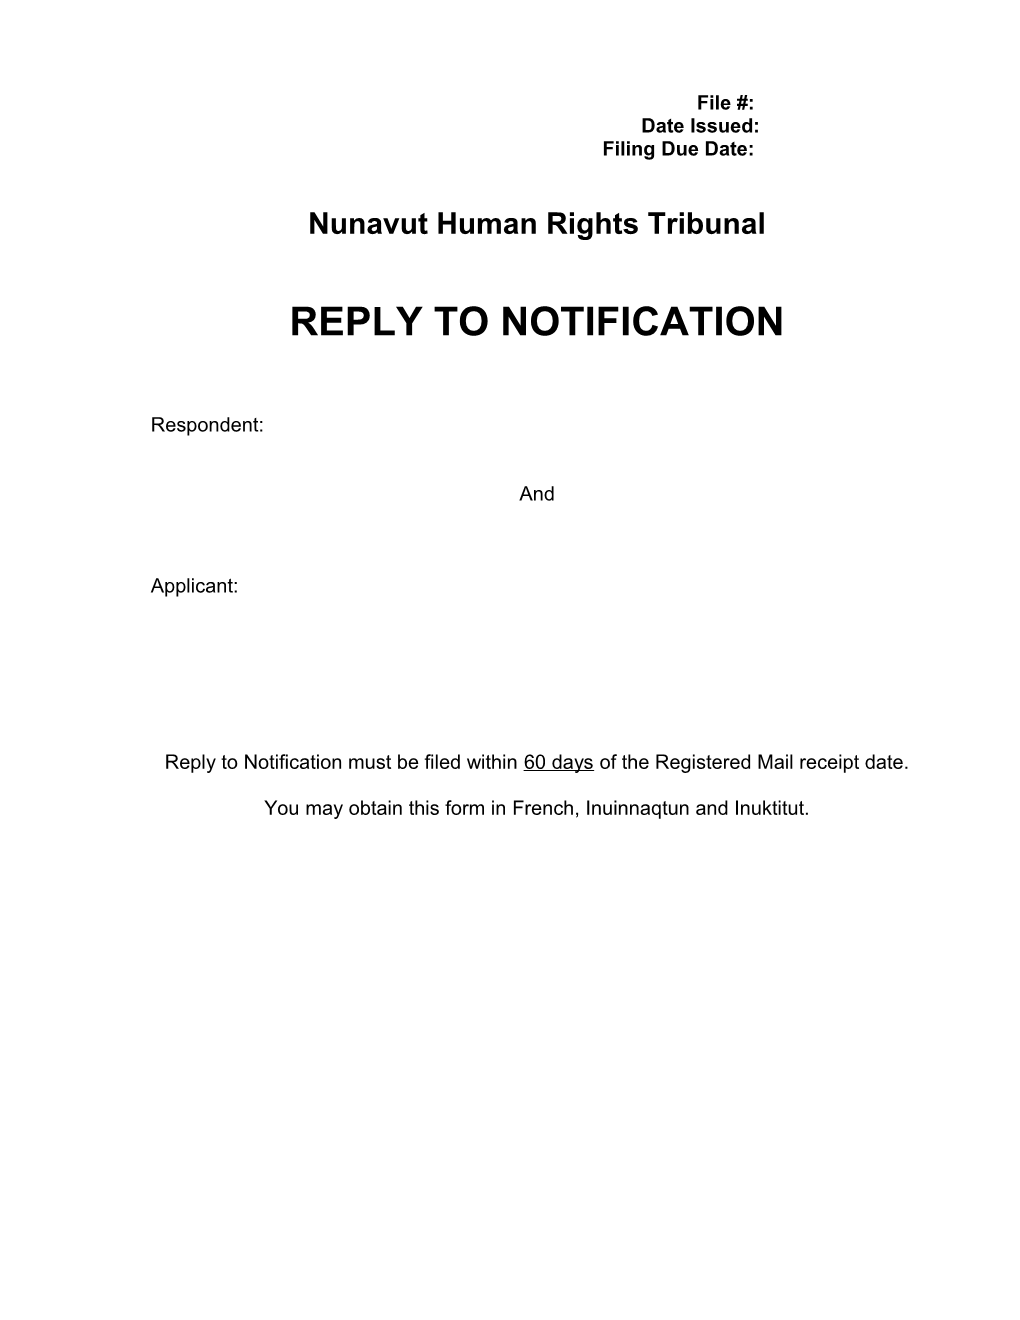 Nunavut Human Rights Tribunal